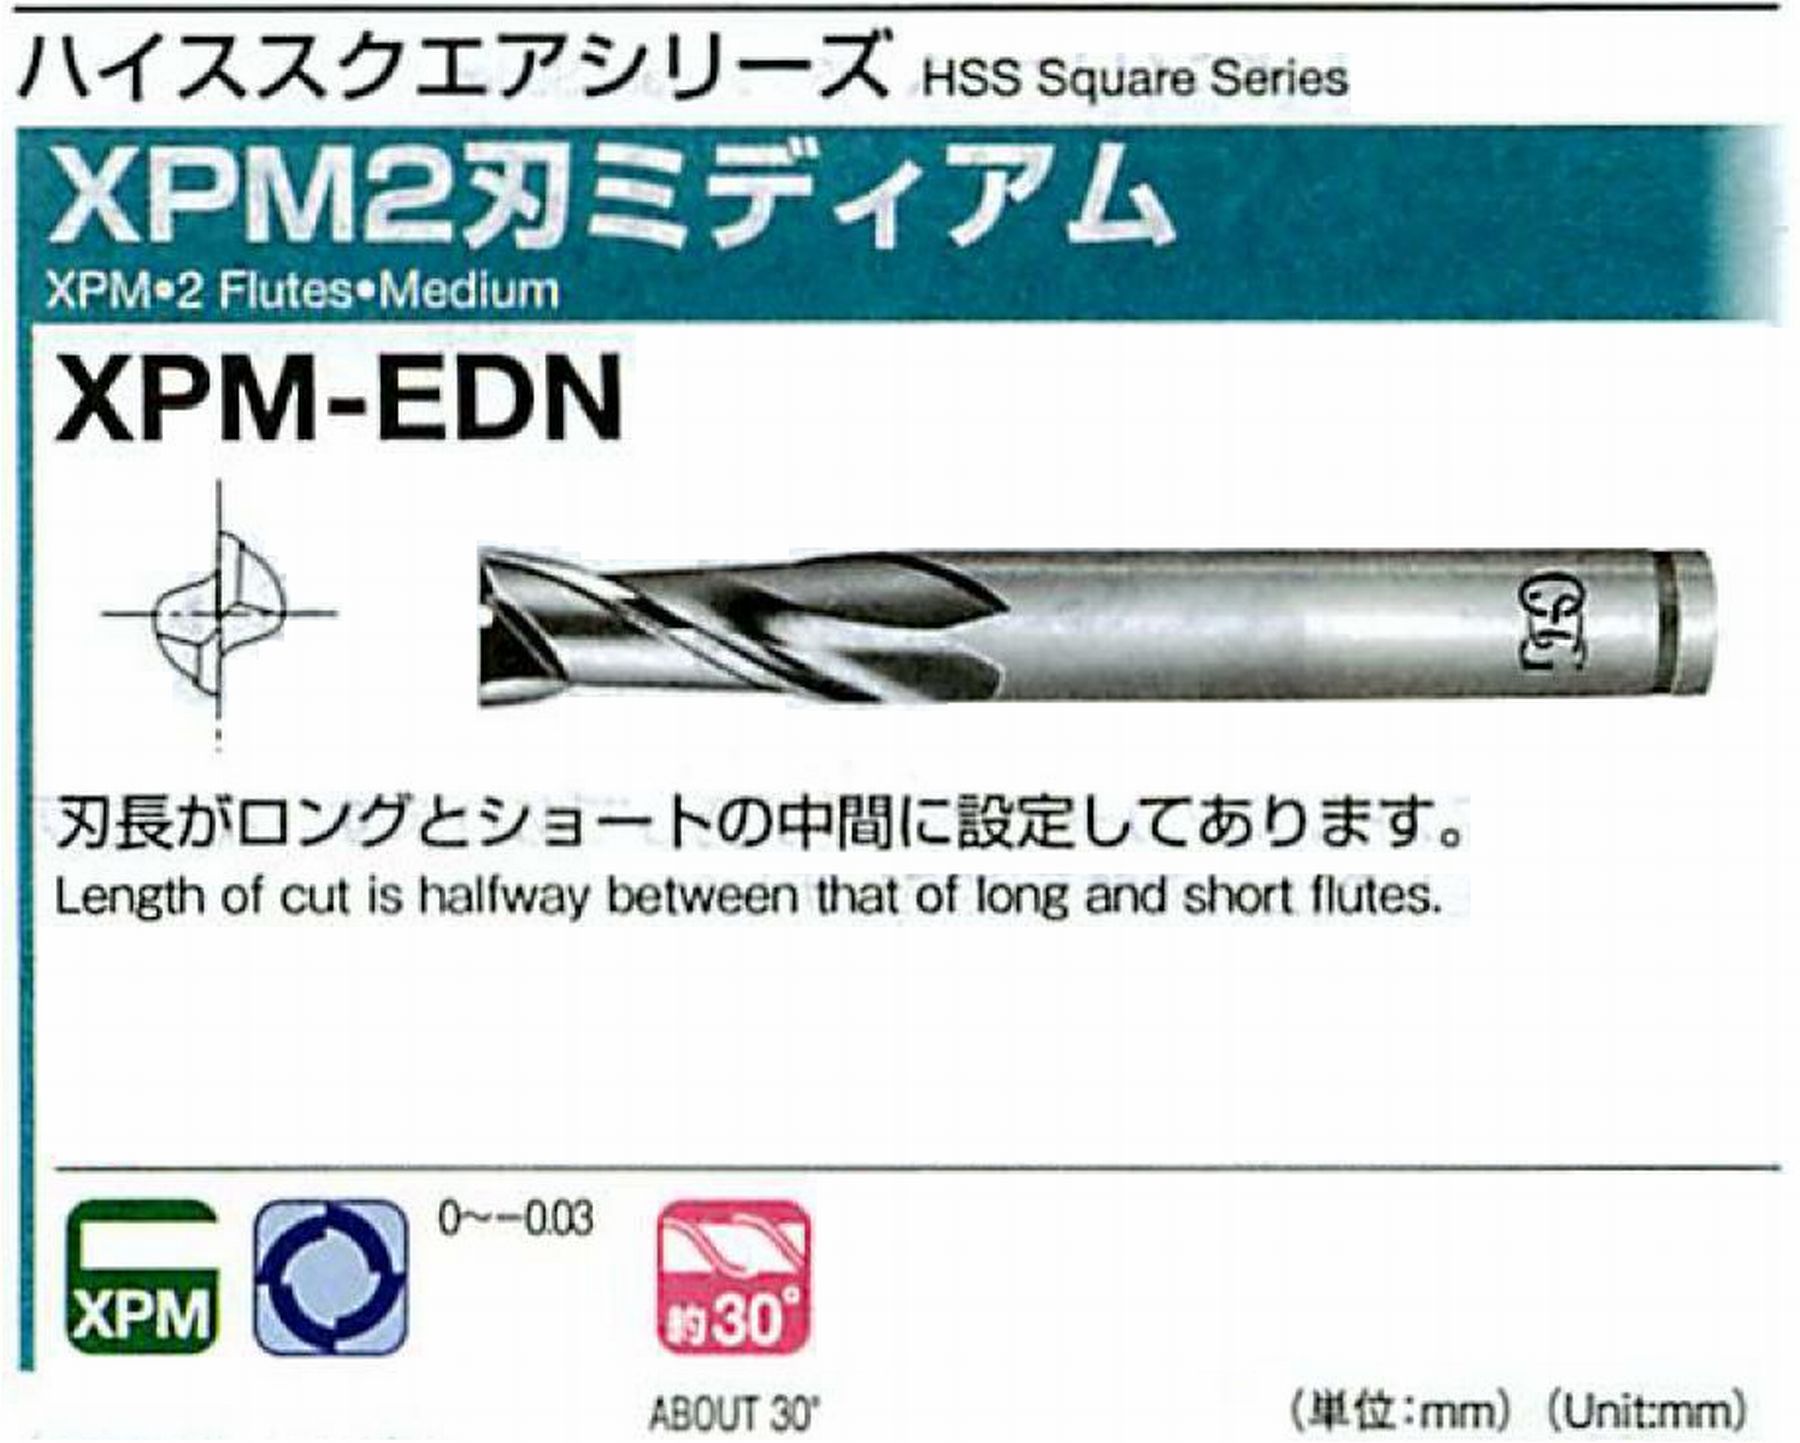 オーエスジー/OSG XPM2刃ミディアム XPM-EDN 外径8 全長75 刃長20 シャンク径10mm